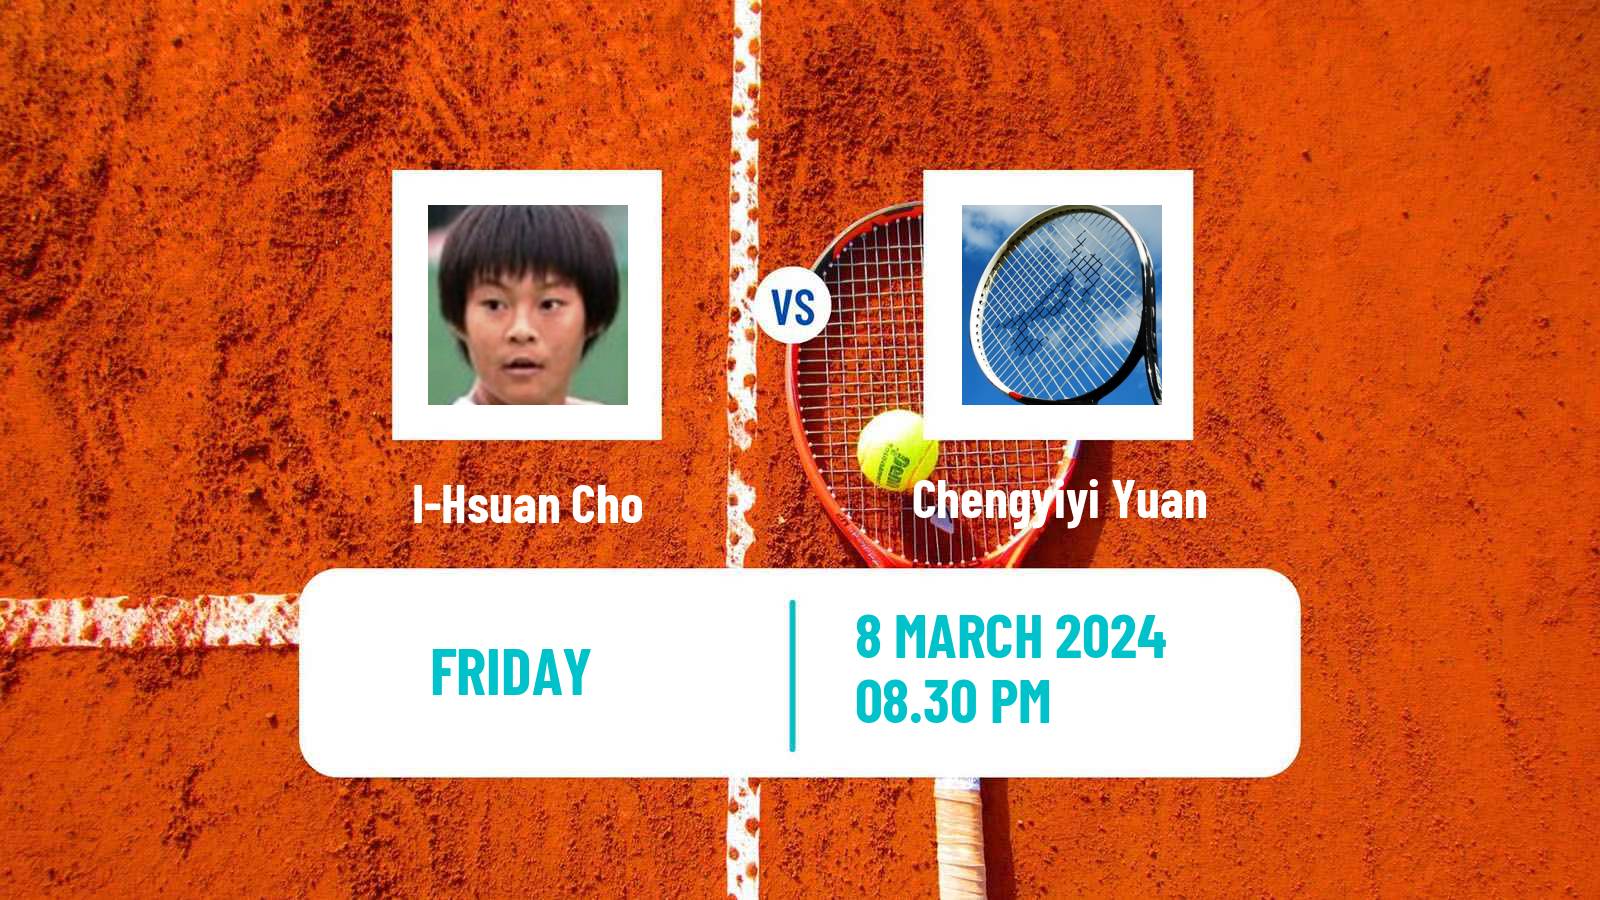 Tennis ITF W15 Kuala Lumpur Women I-Hsuan Cho - Chengyiyi Yuan